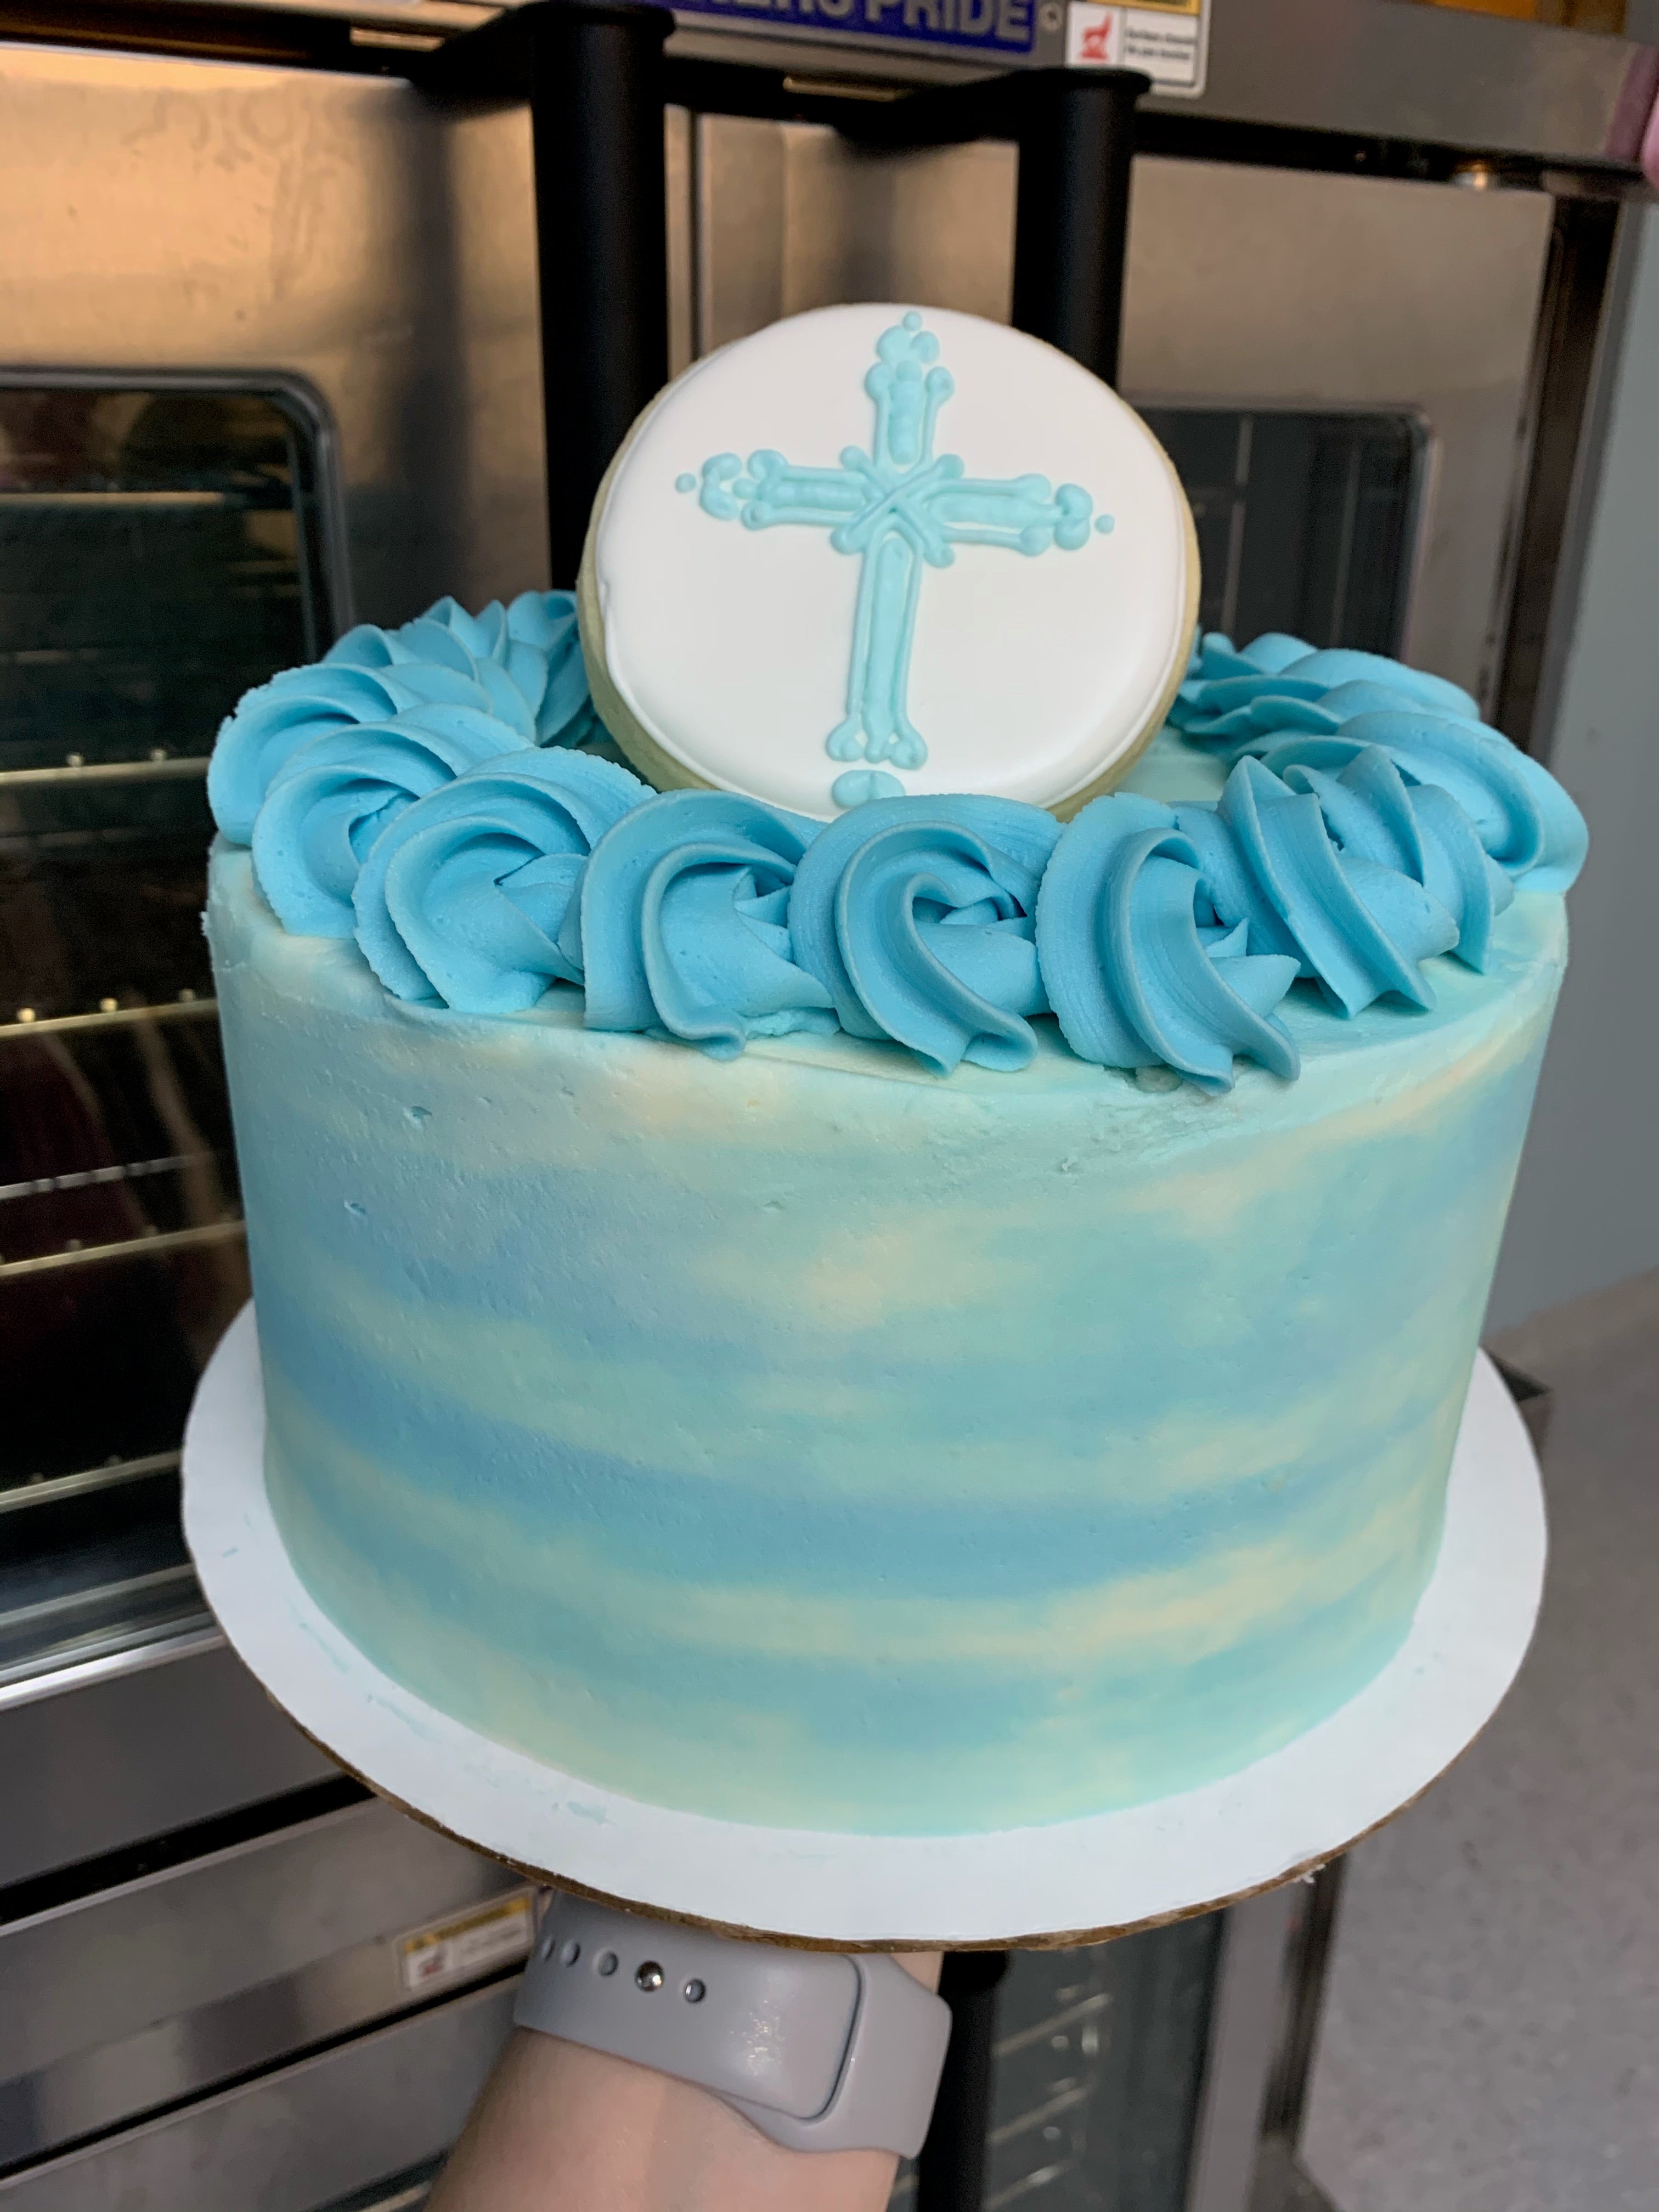 Christening cake for a baby boy 💙 #cakedecorating #fyp #cakesoftiktok |  TikTok